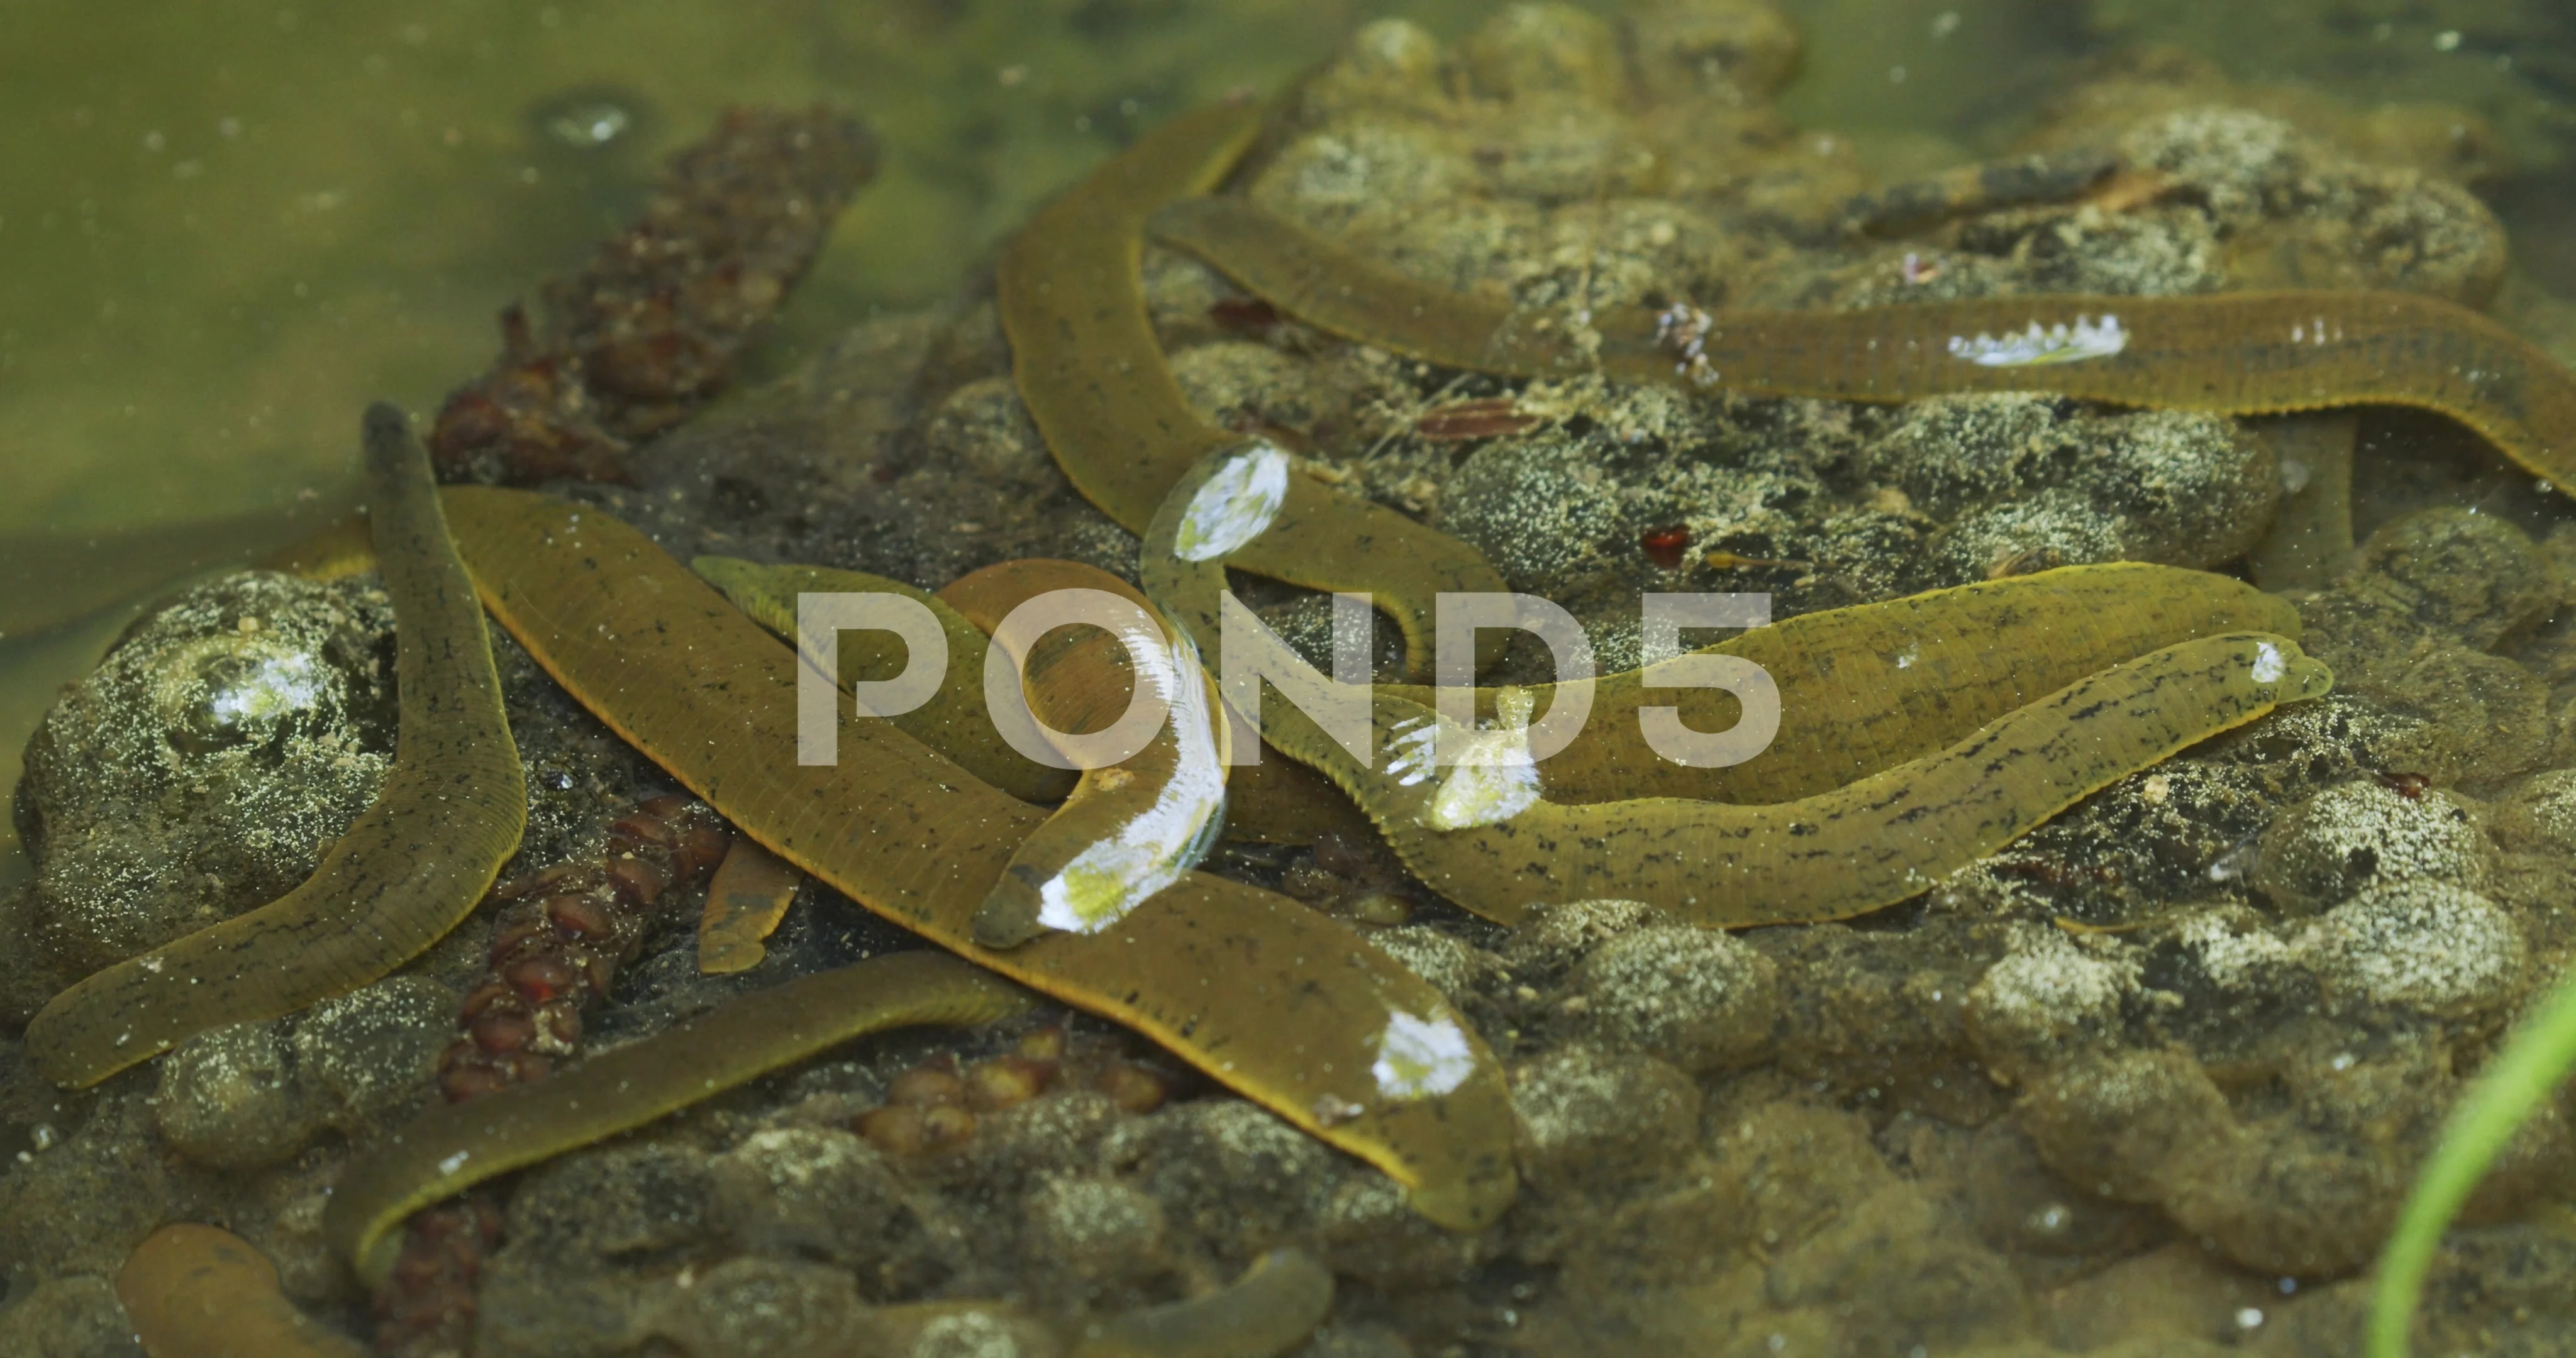 https://images.pond5.com/leech-shallow-water-stream-frog-151211732_prevstill.jpeg